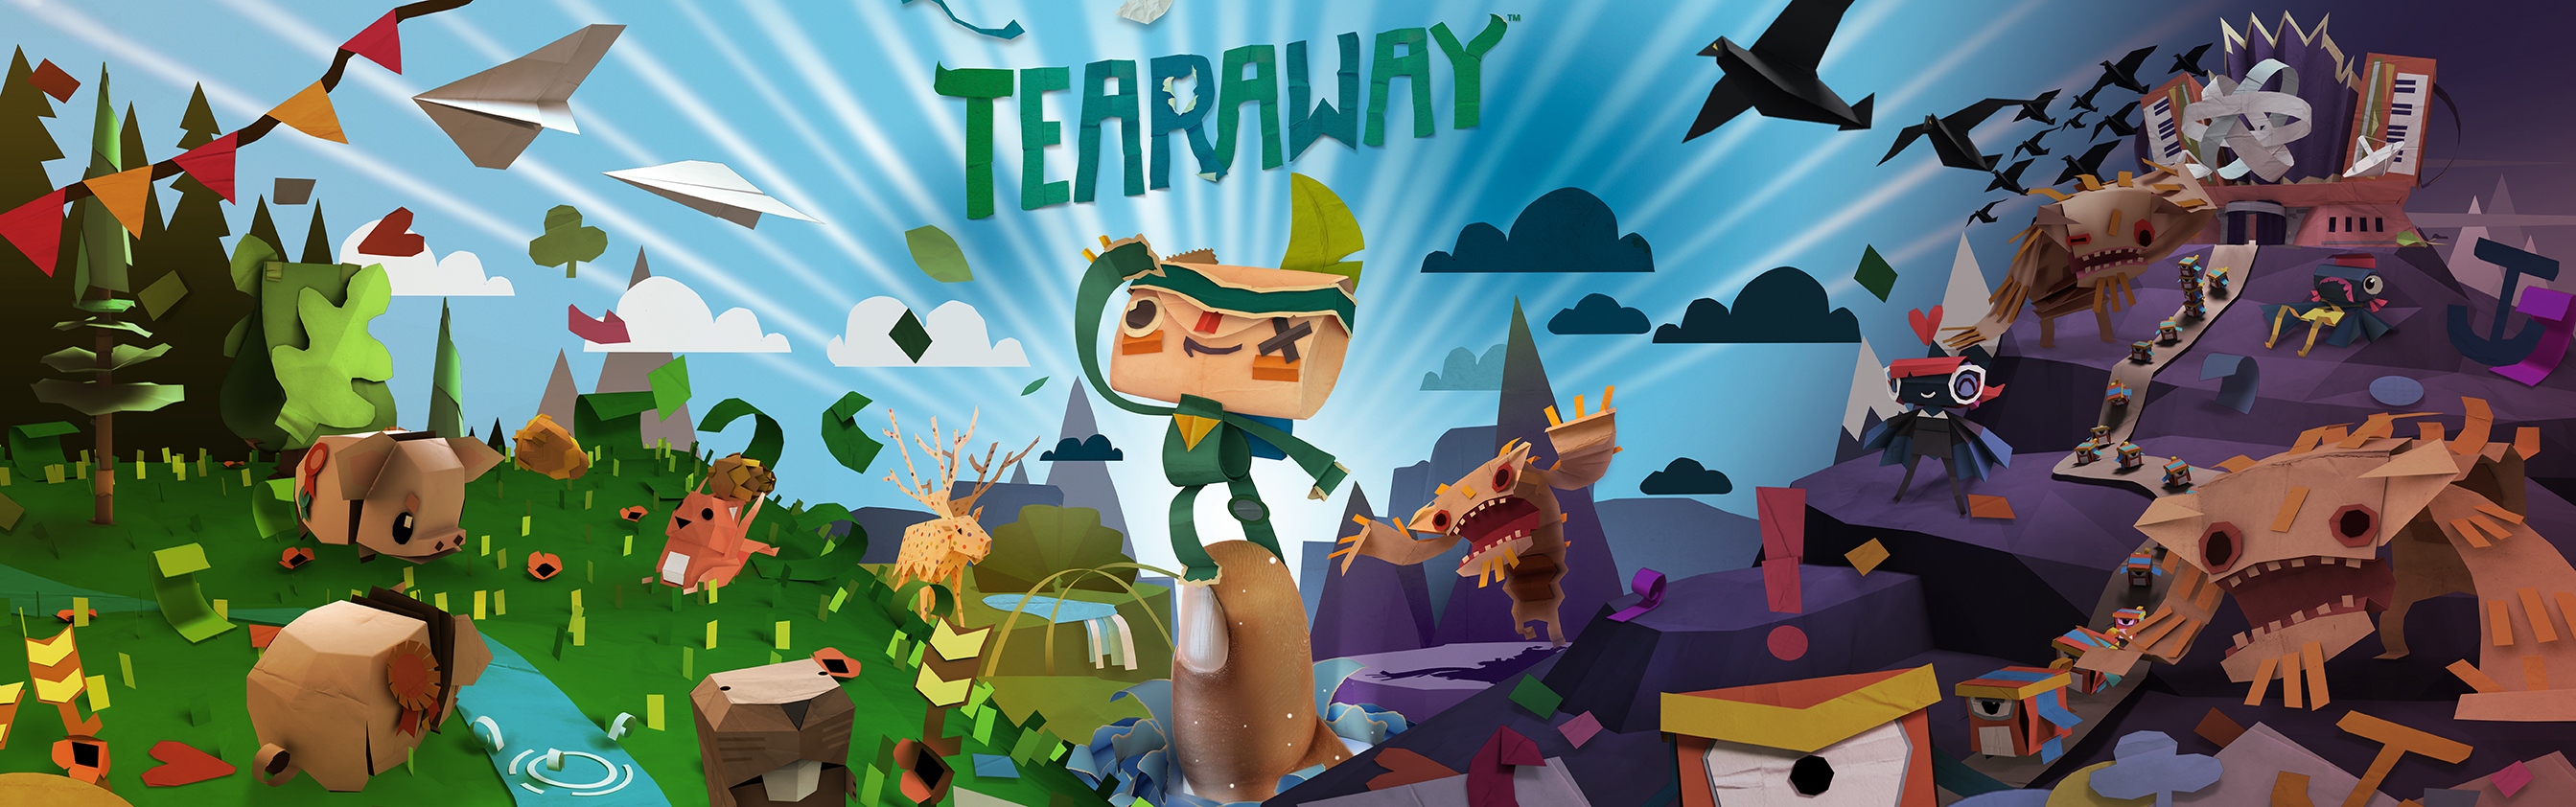 Tearaway Logo